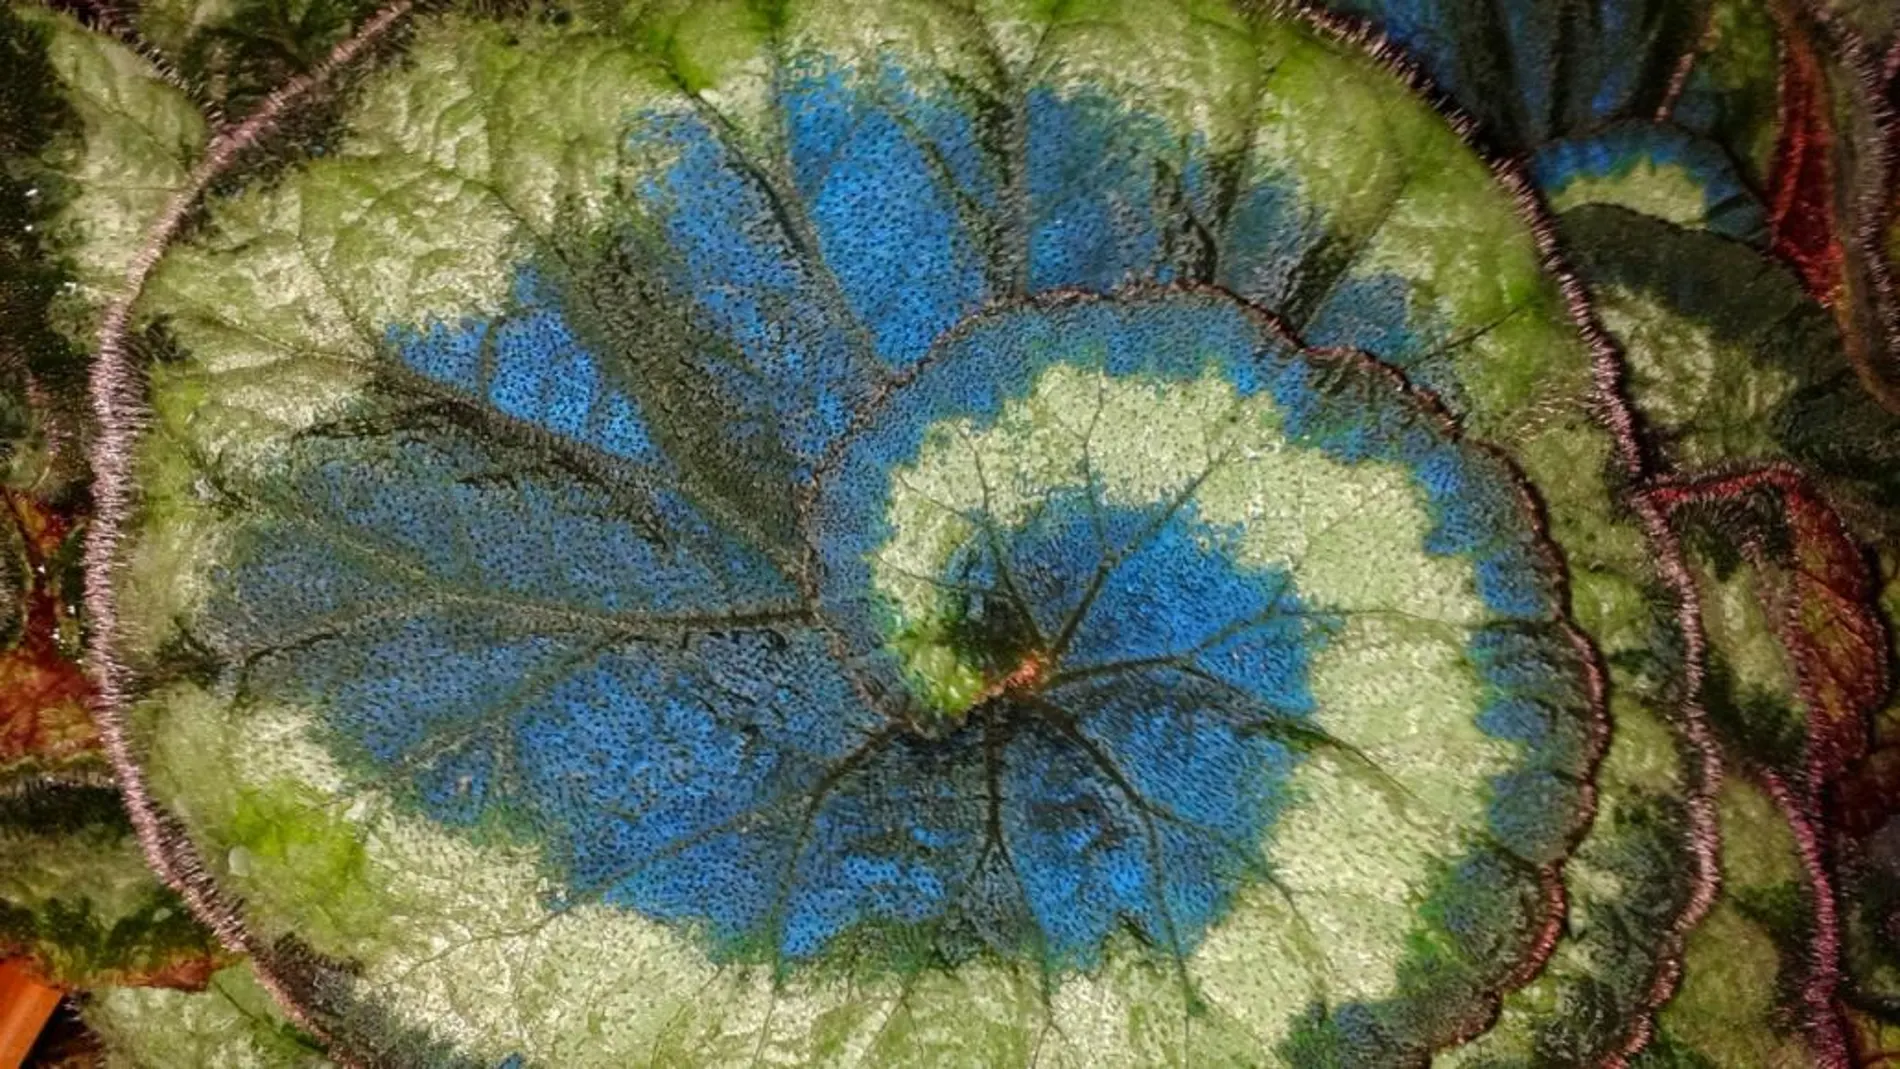 Una hoja de la llamativa Begonia pavonina